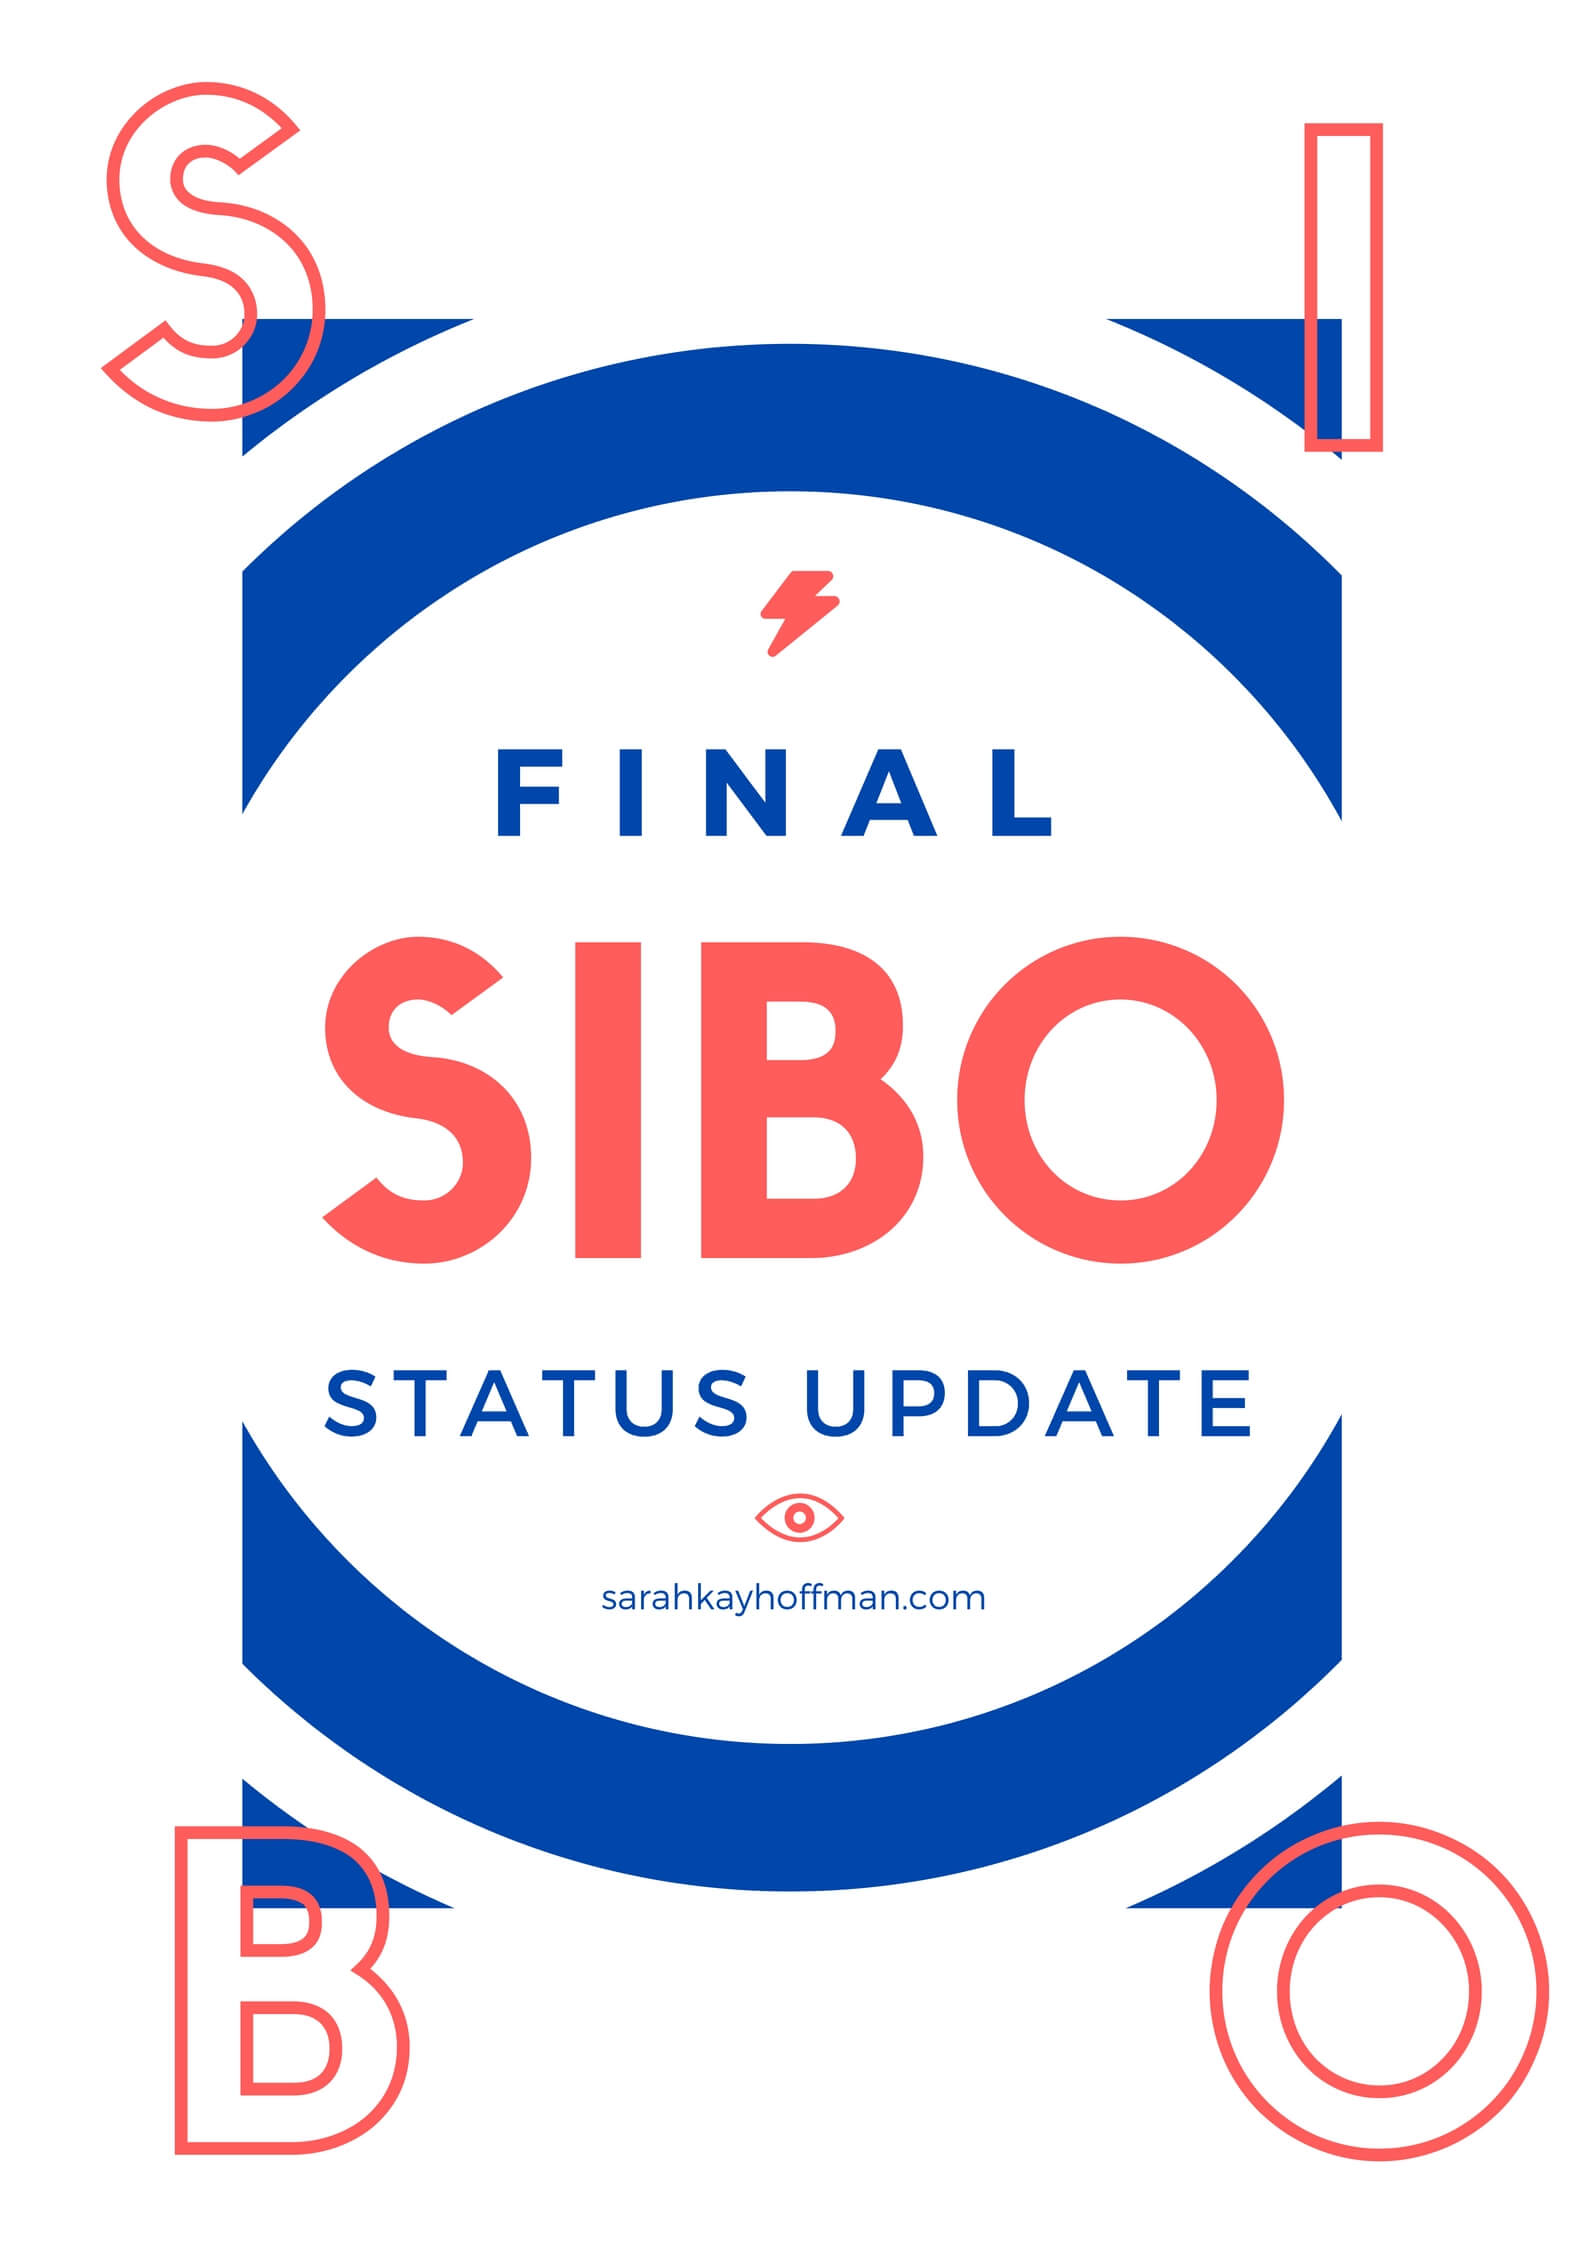 SIBO Status Update via sarahkayhoffman.com